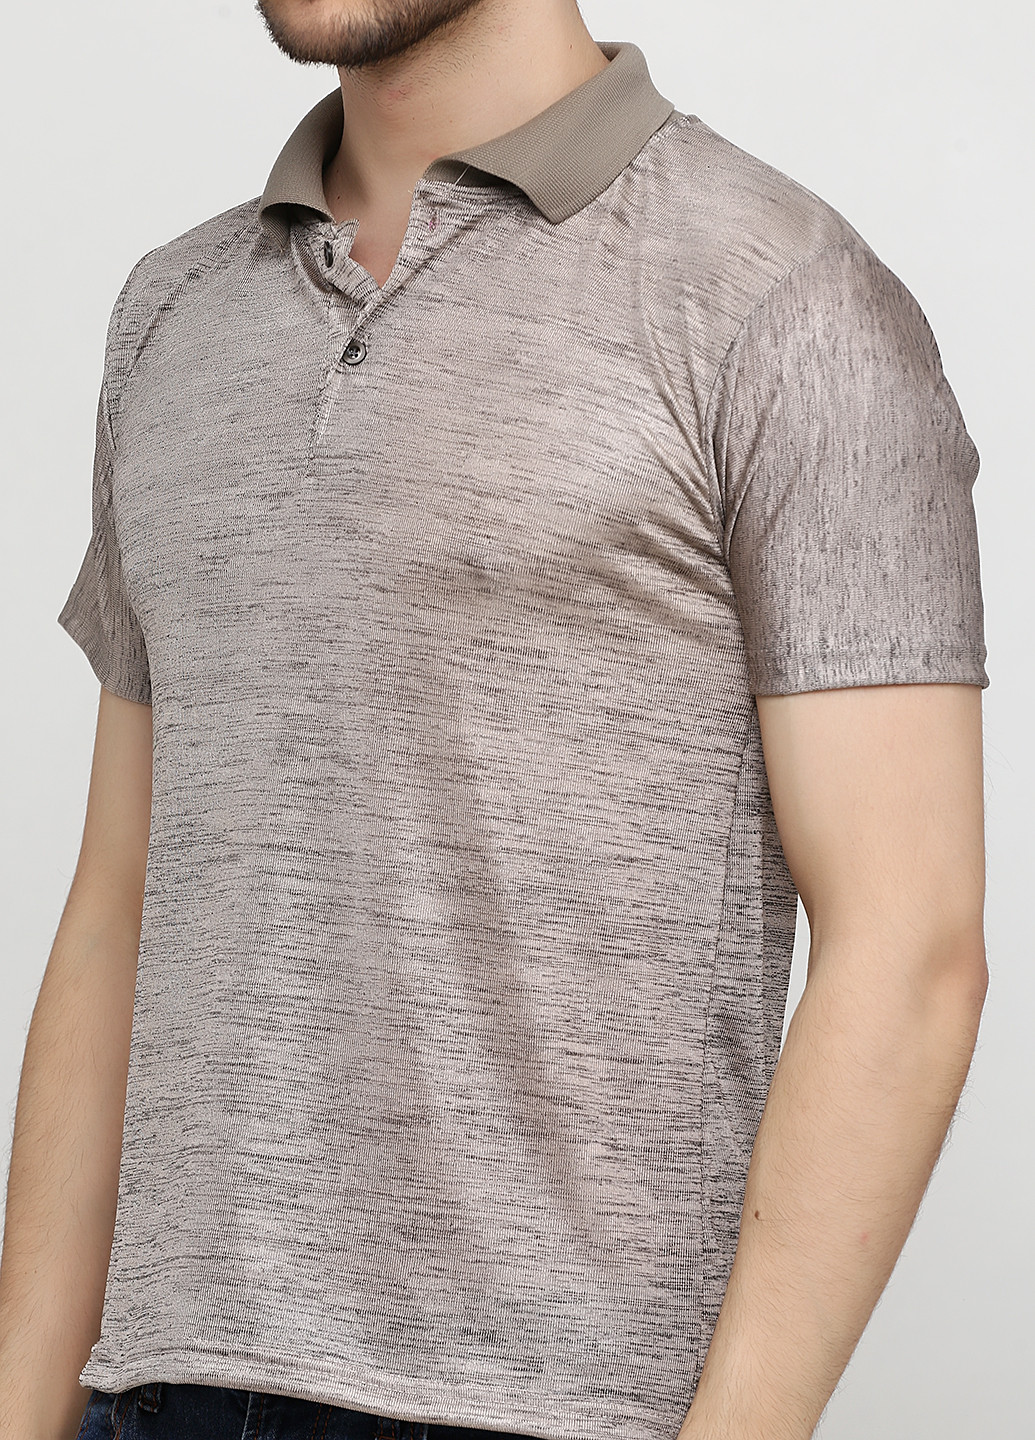 Бежевая футболка-поло для мужчин Chiarotex меланжевая